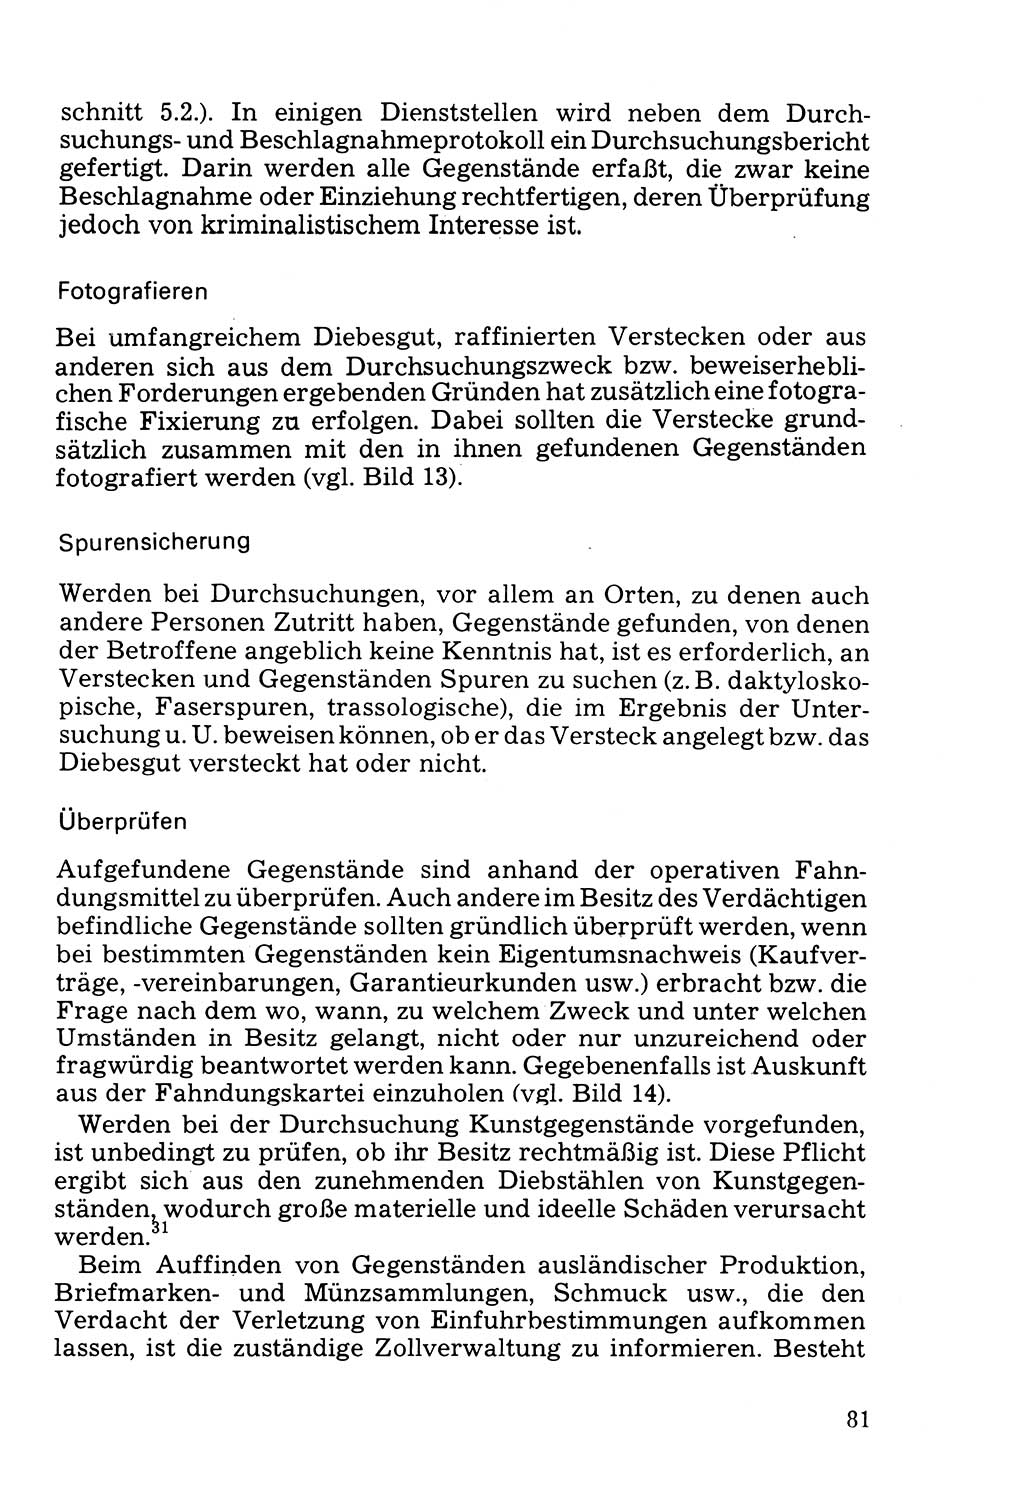 Die Durchsuchung und die Beschlagnahme [Deutsche Demokratische Republik (DDR)] 1979, Seite 81 (Durchs. Beschl. DDR 1979, S. 81)